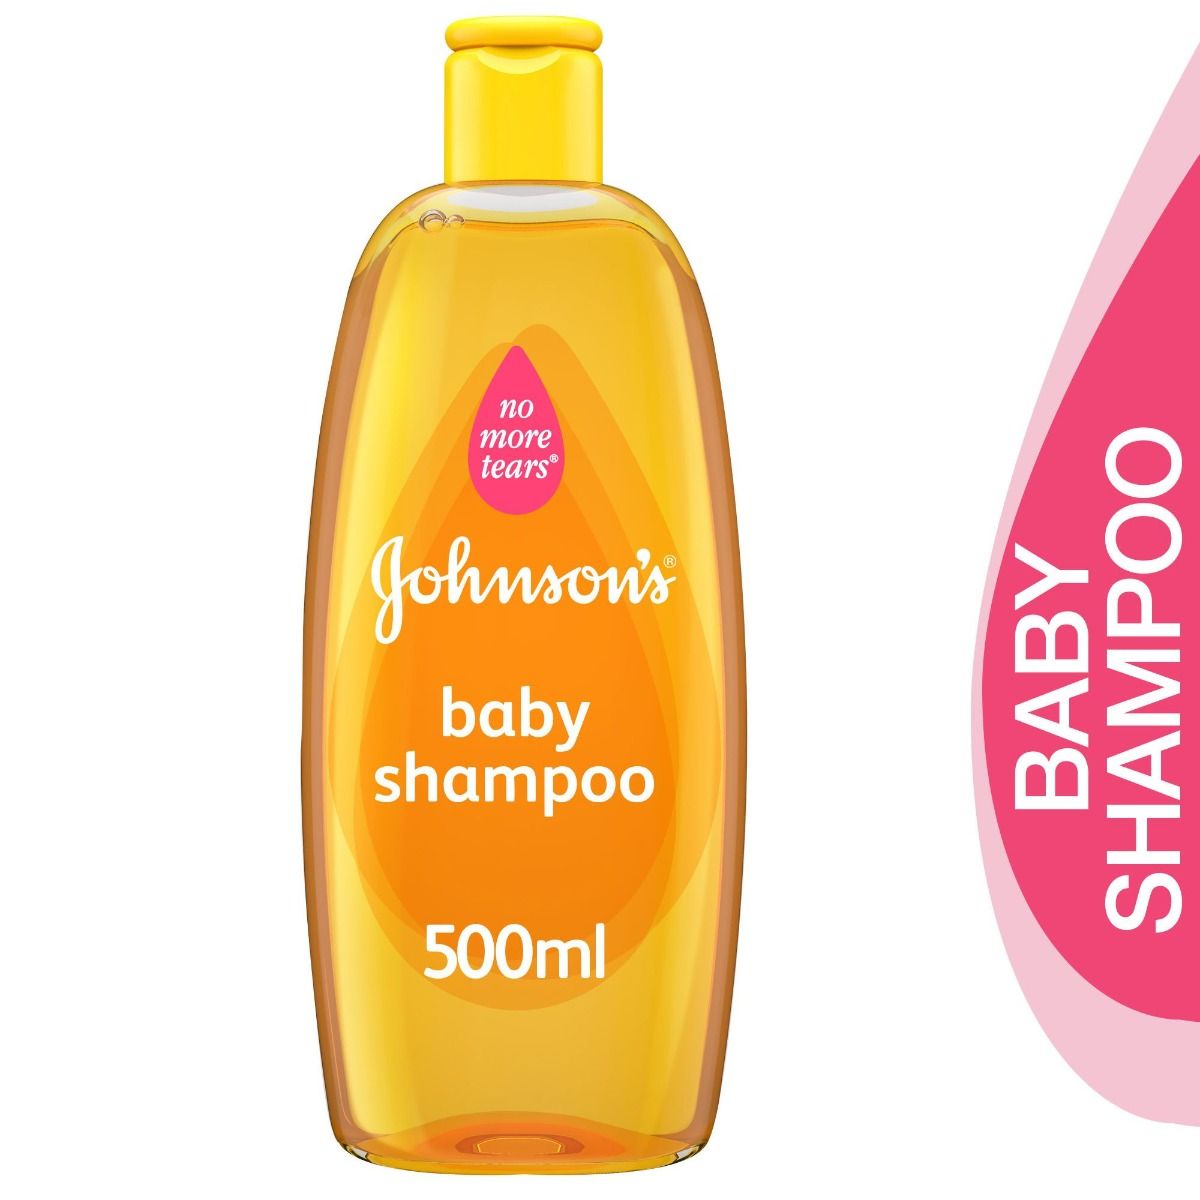 johnson's baby shampoo 500ml